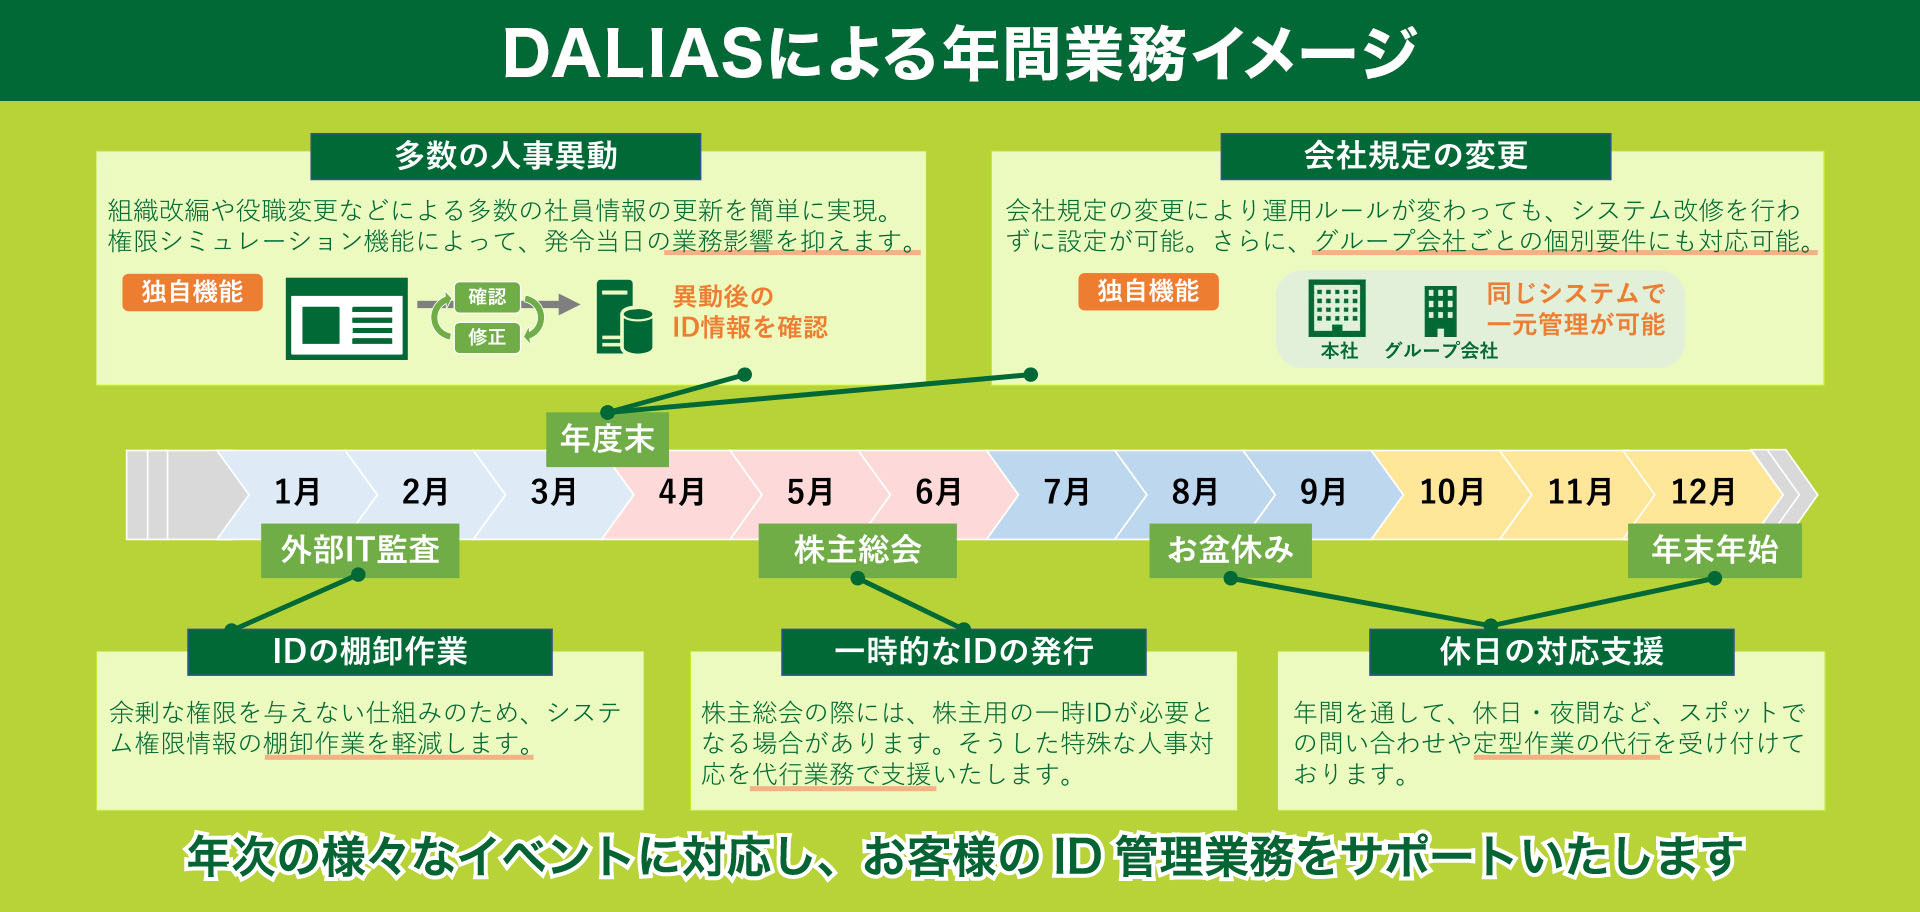 ID情報基盤DBサービス | DALIASによる年間業務イメージ | DALIAS